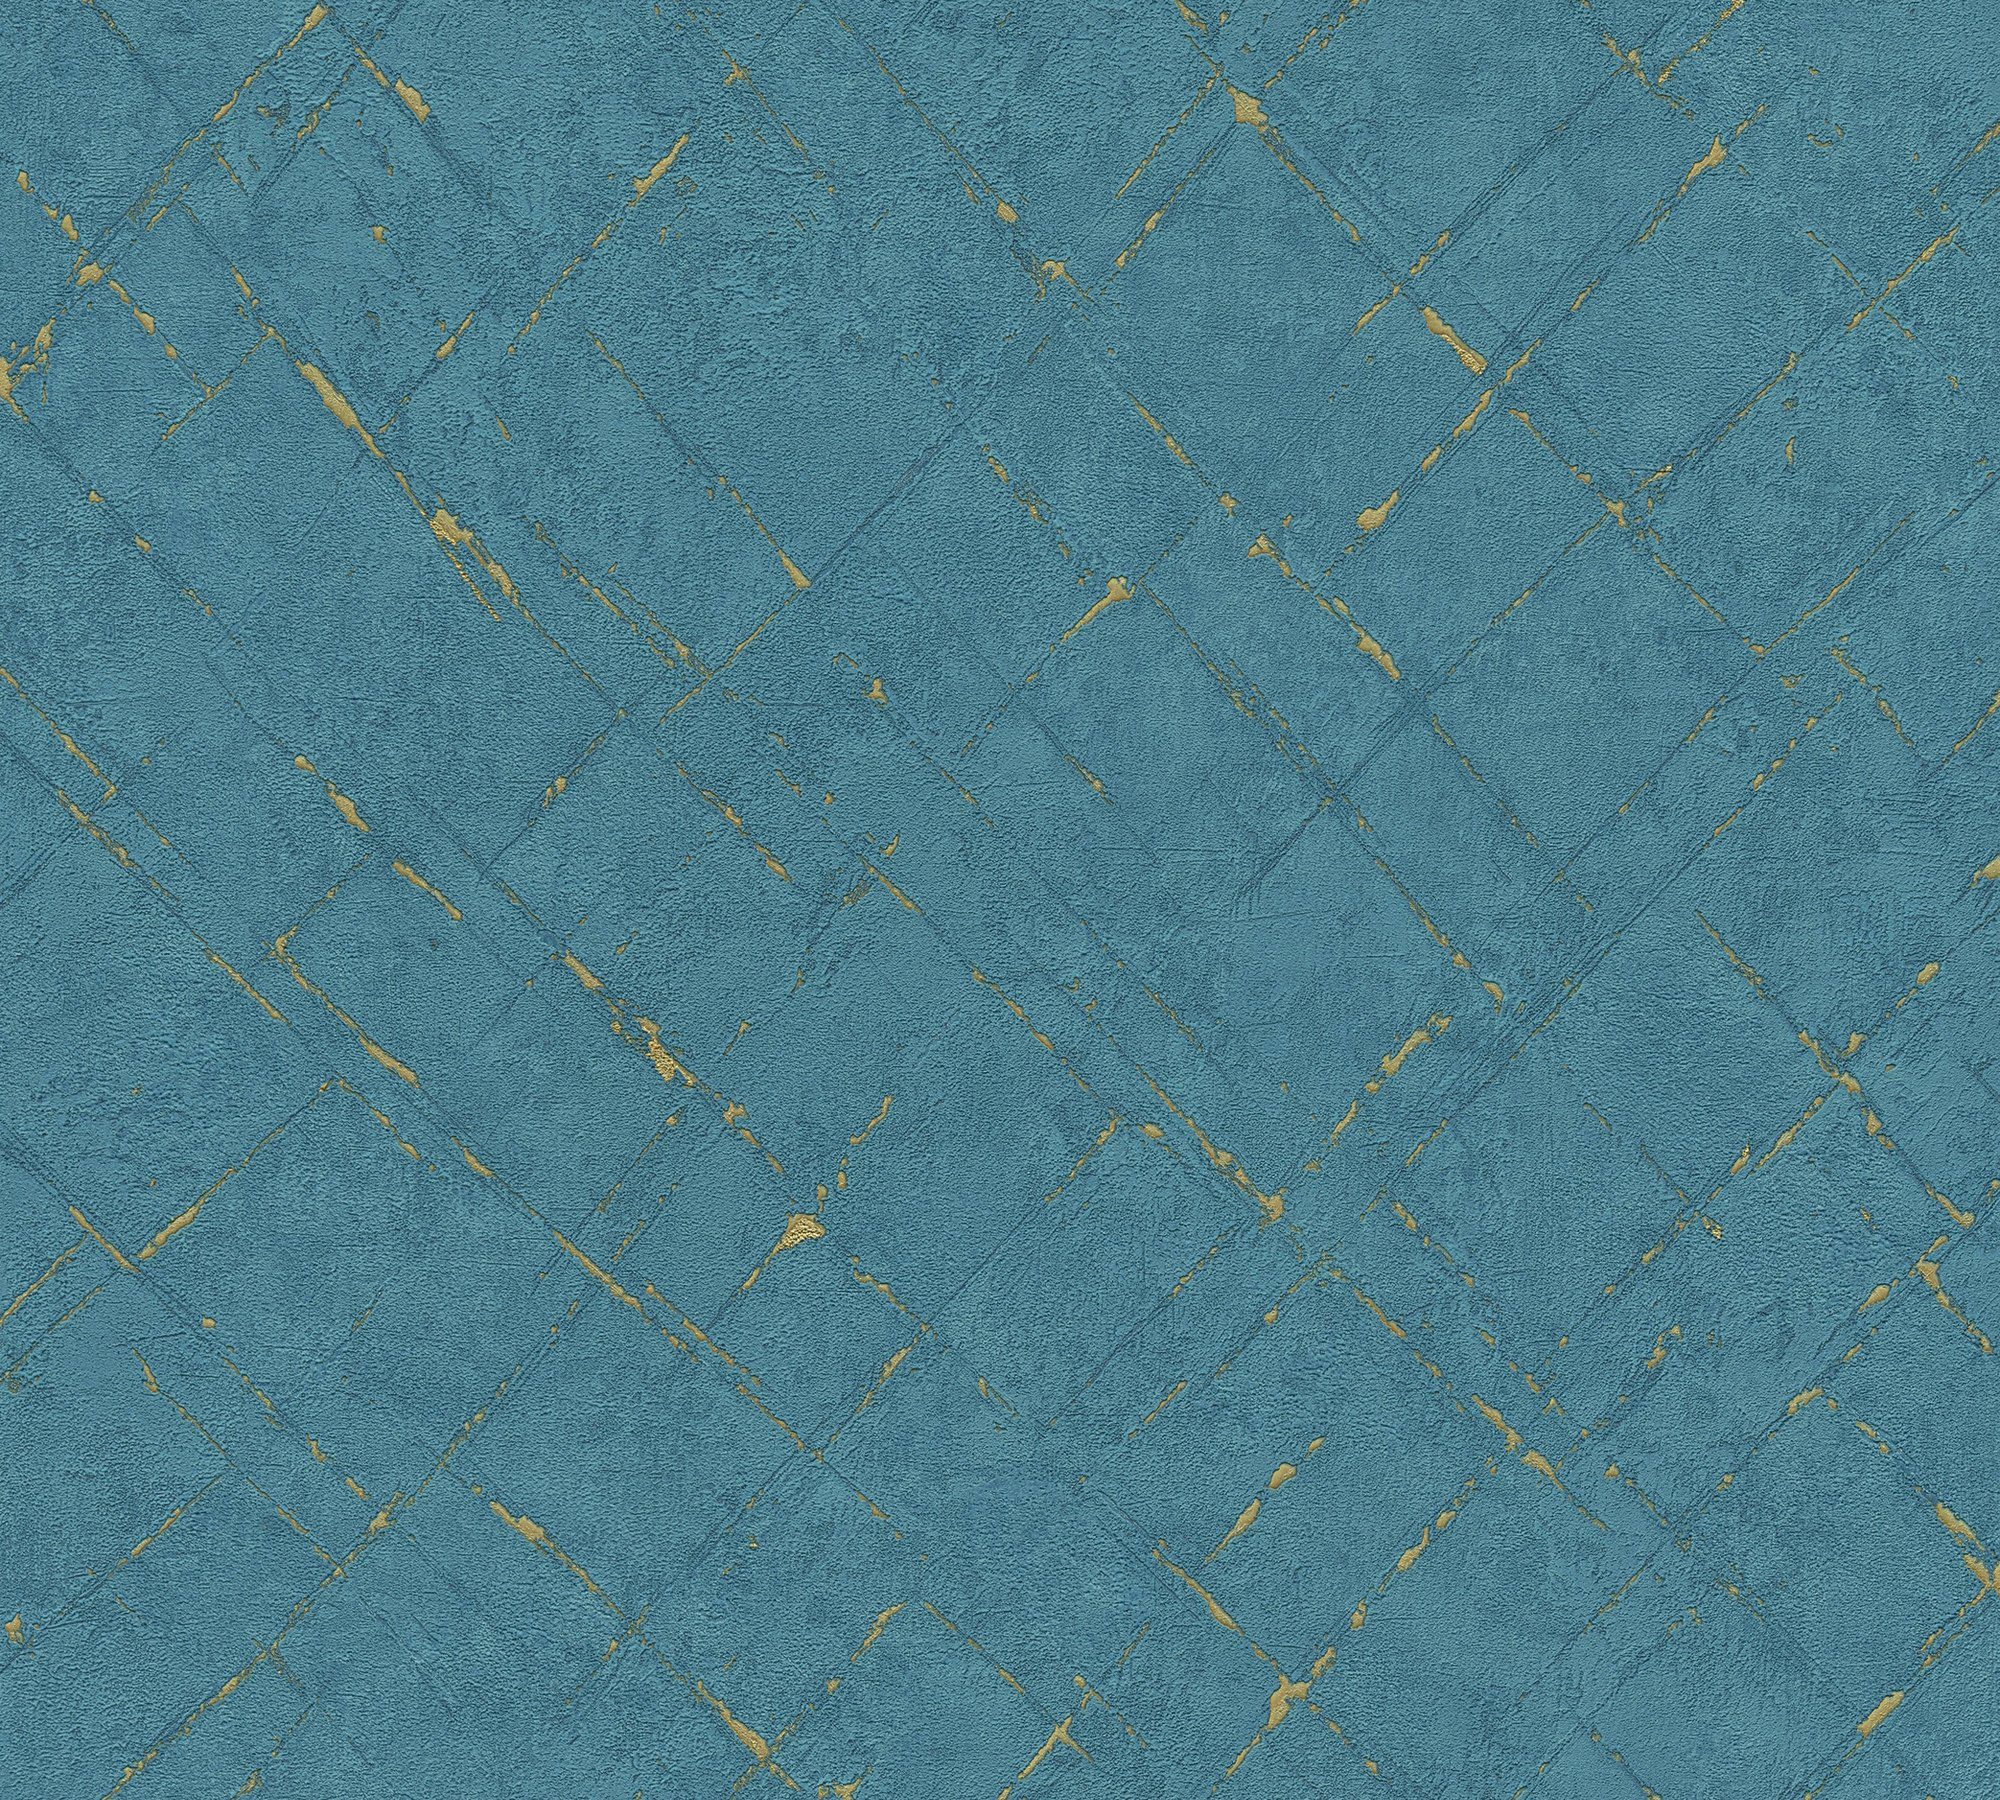 Grafisch blau/gold Vliestapete Steinoptik Farbeinsatz, A.S. unifarben mit Emotion Tapete strukturiert, Création Graphic,